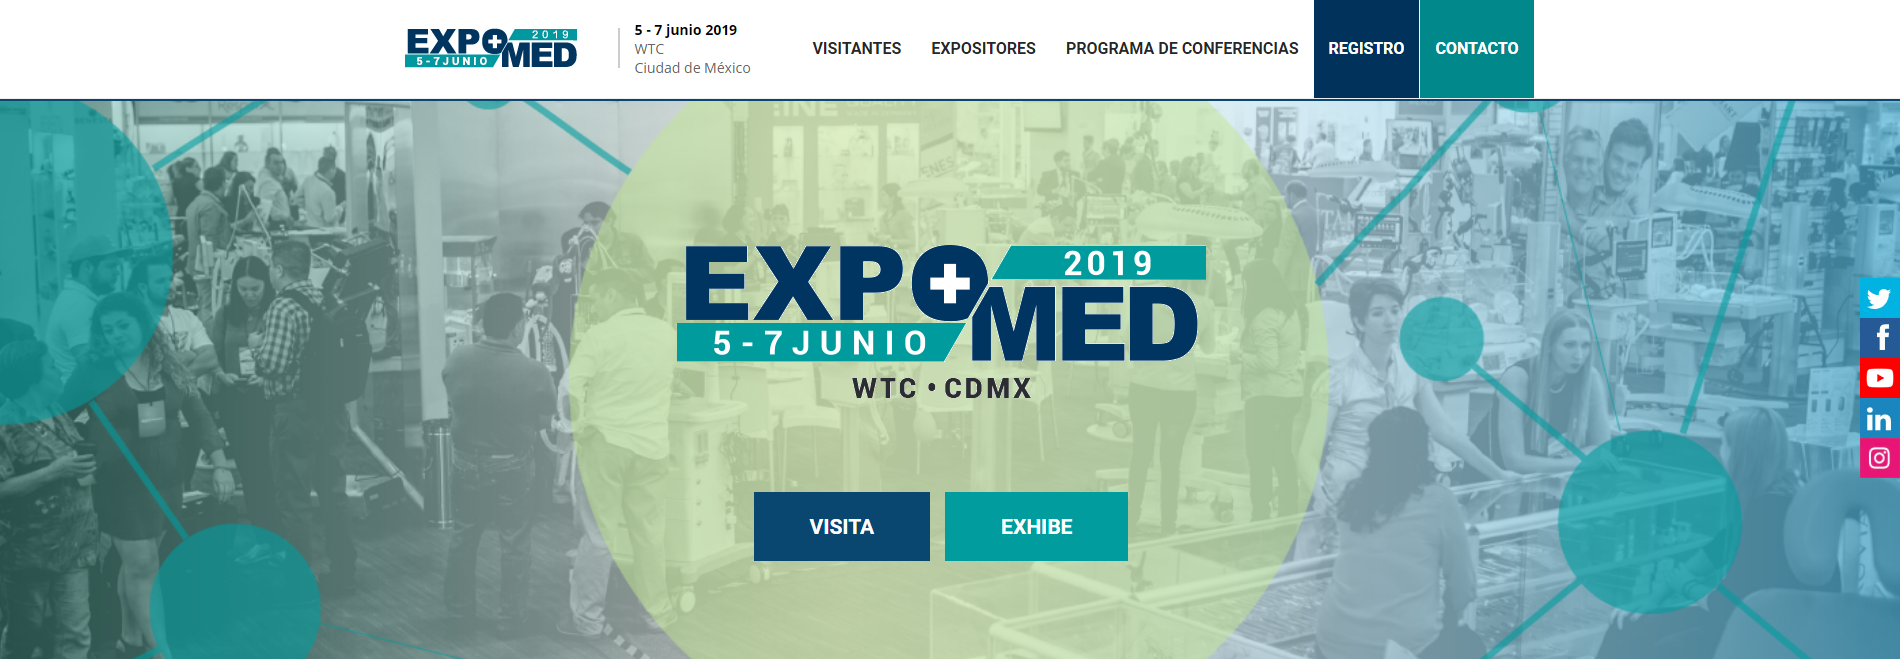 ExpoMed 2019 Evento Médico